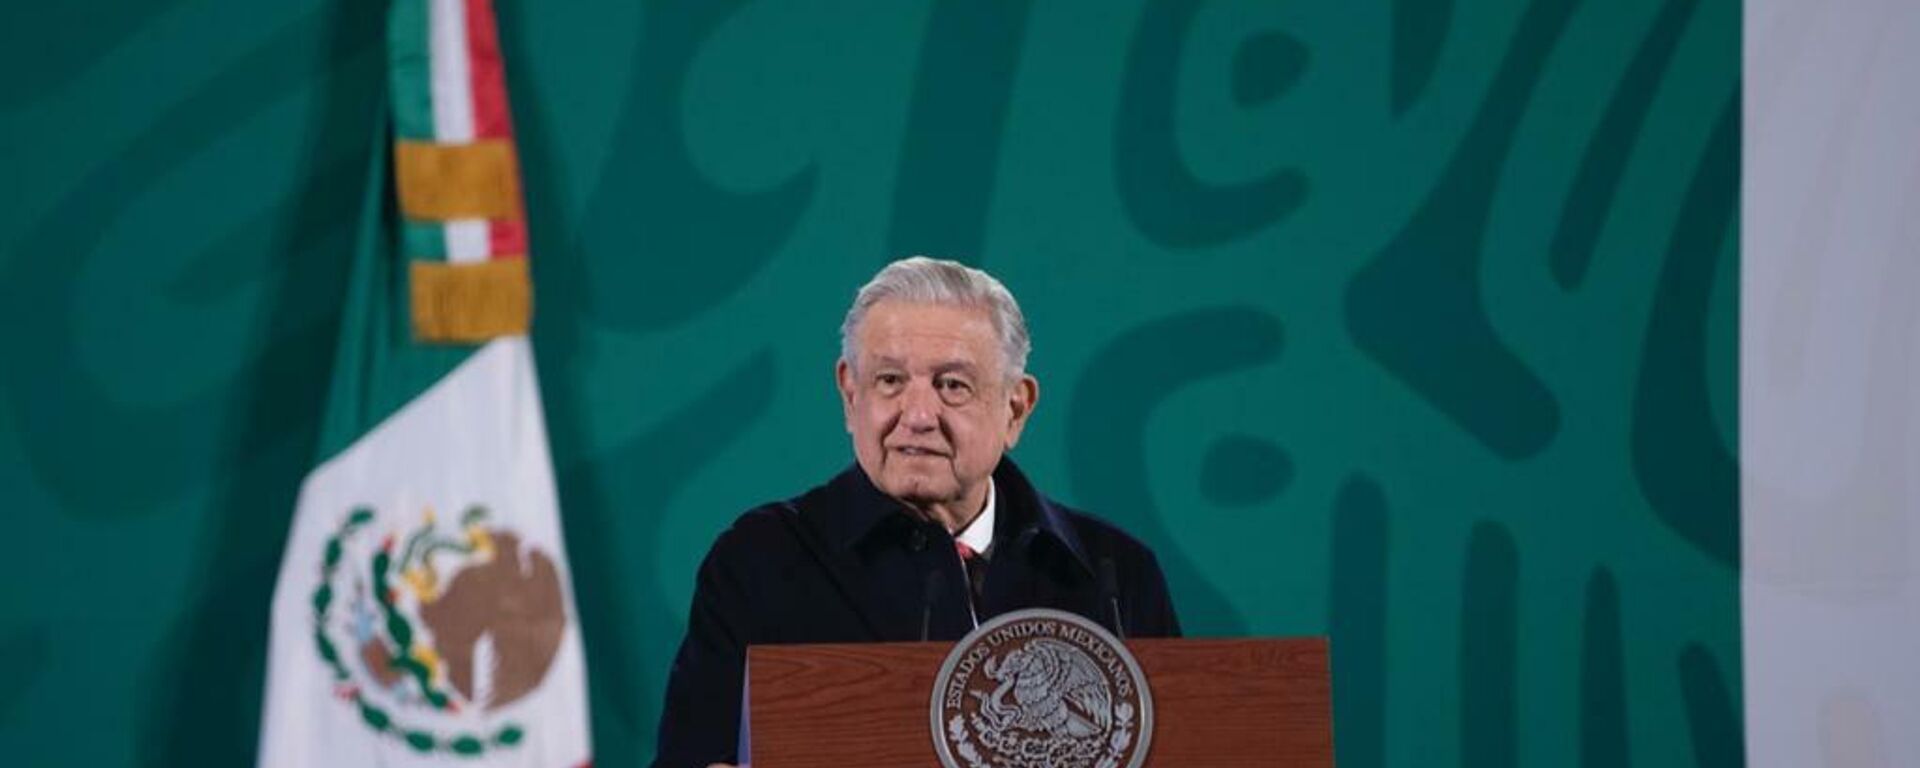 Andrés Manuel López Obrador, presidente de México - Sputnik Mundo, 1920, 30.12.2021